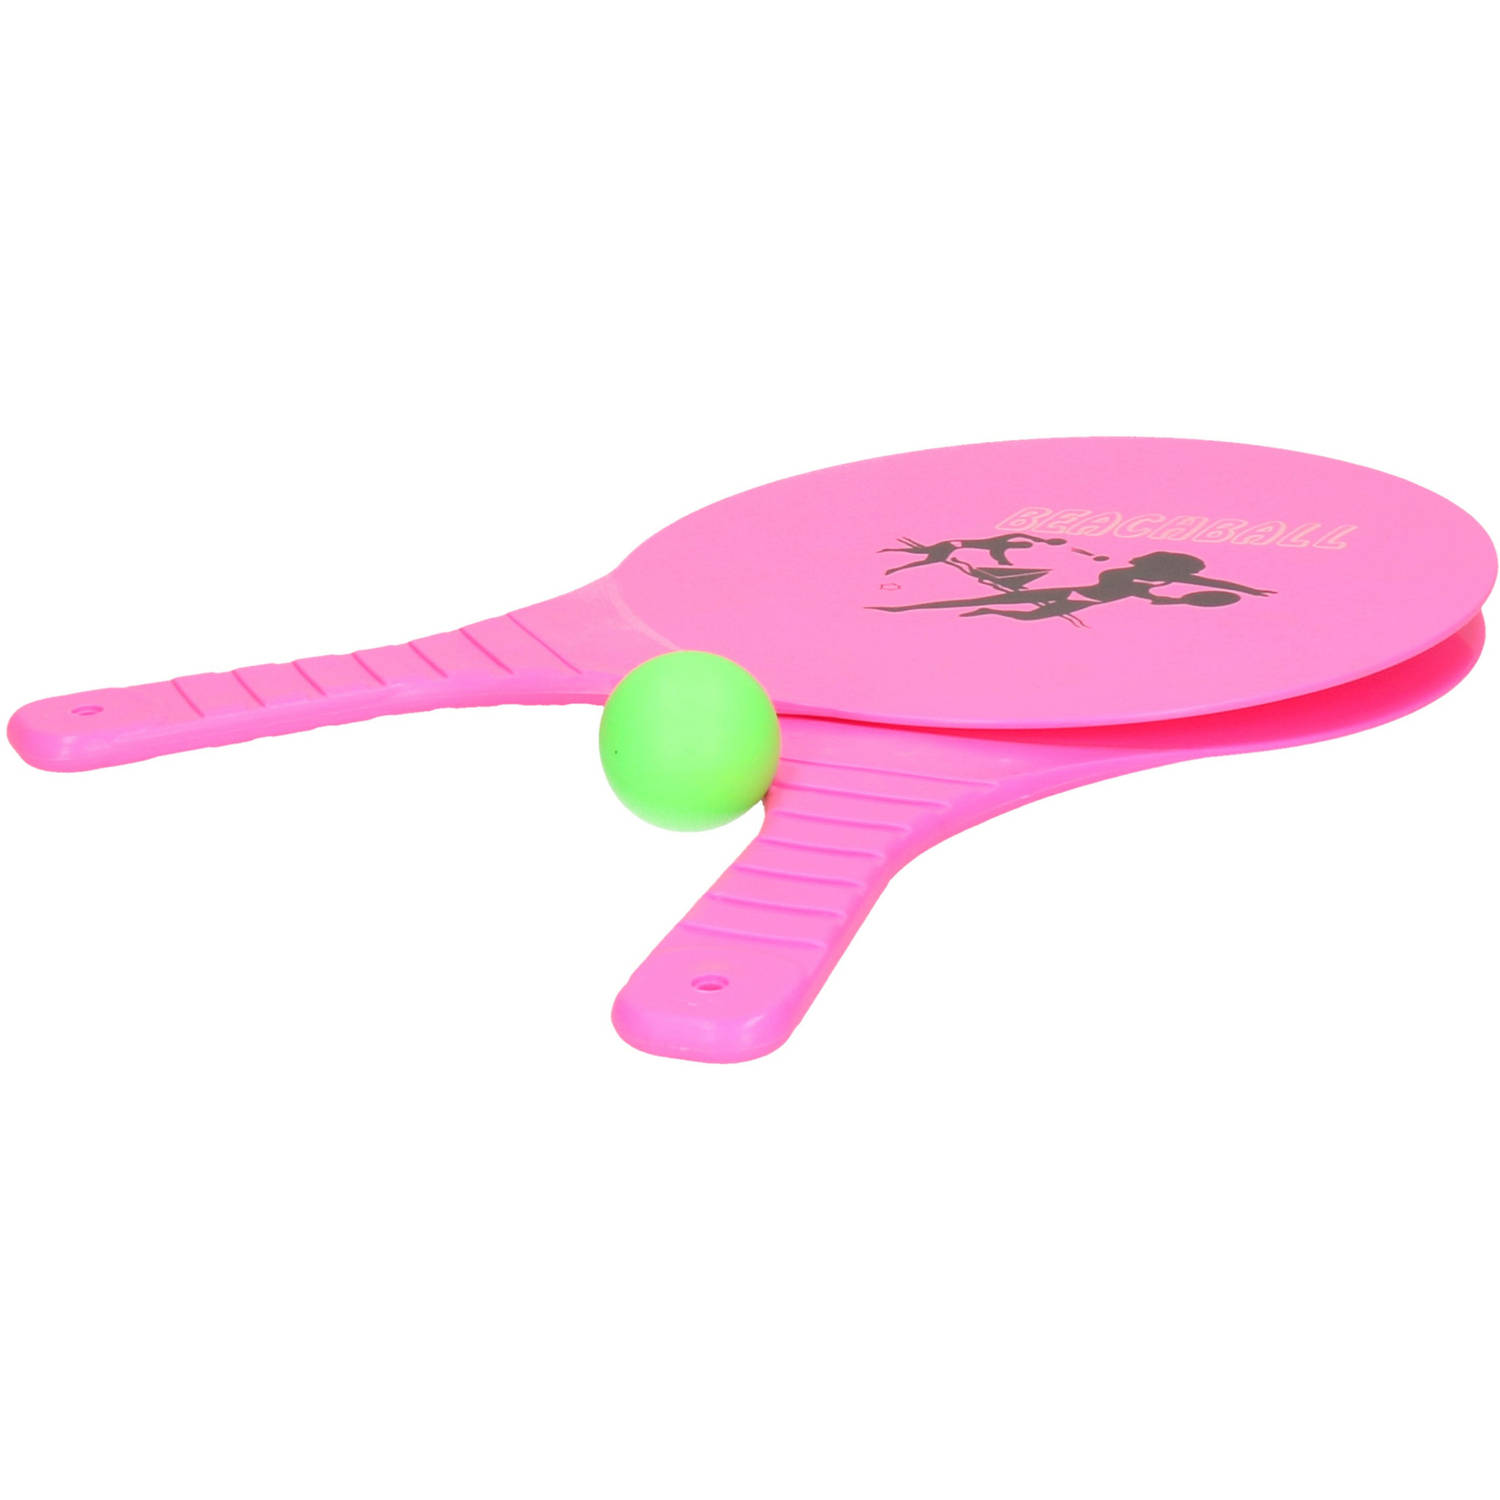 Summertime Beachball set buitenspeelgoed fuchsia roze Rackets-batjes en bal Tennis ballenspel Beachb